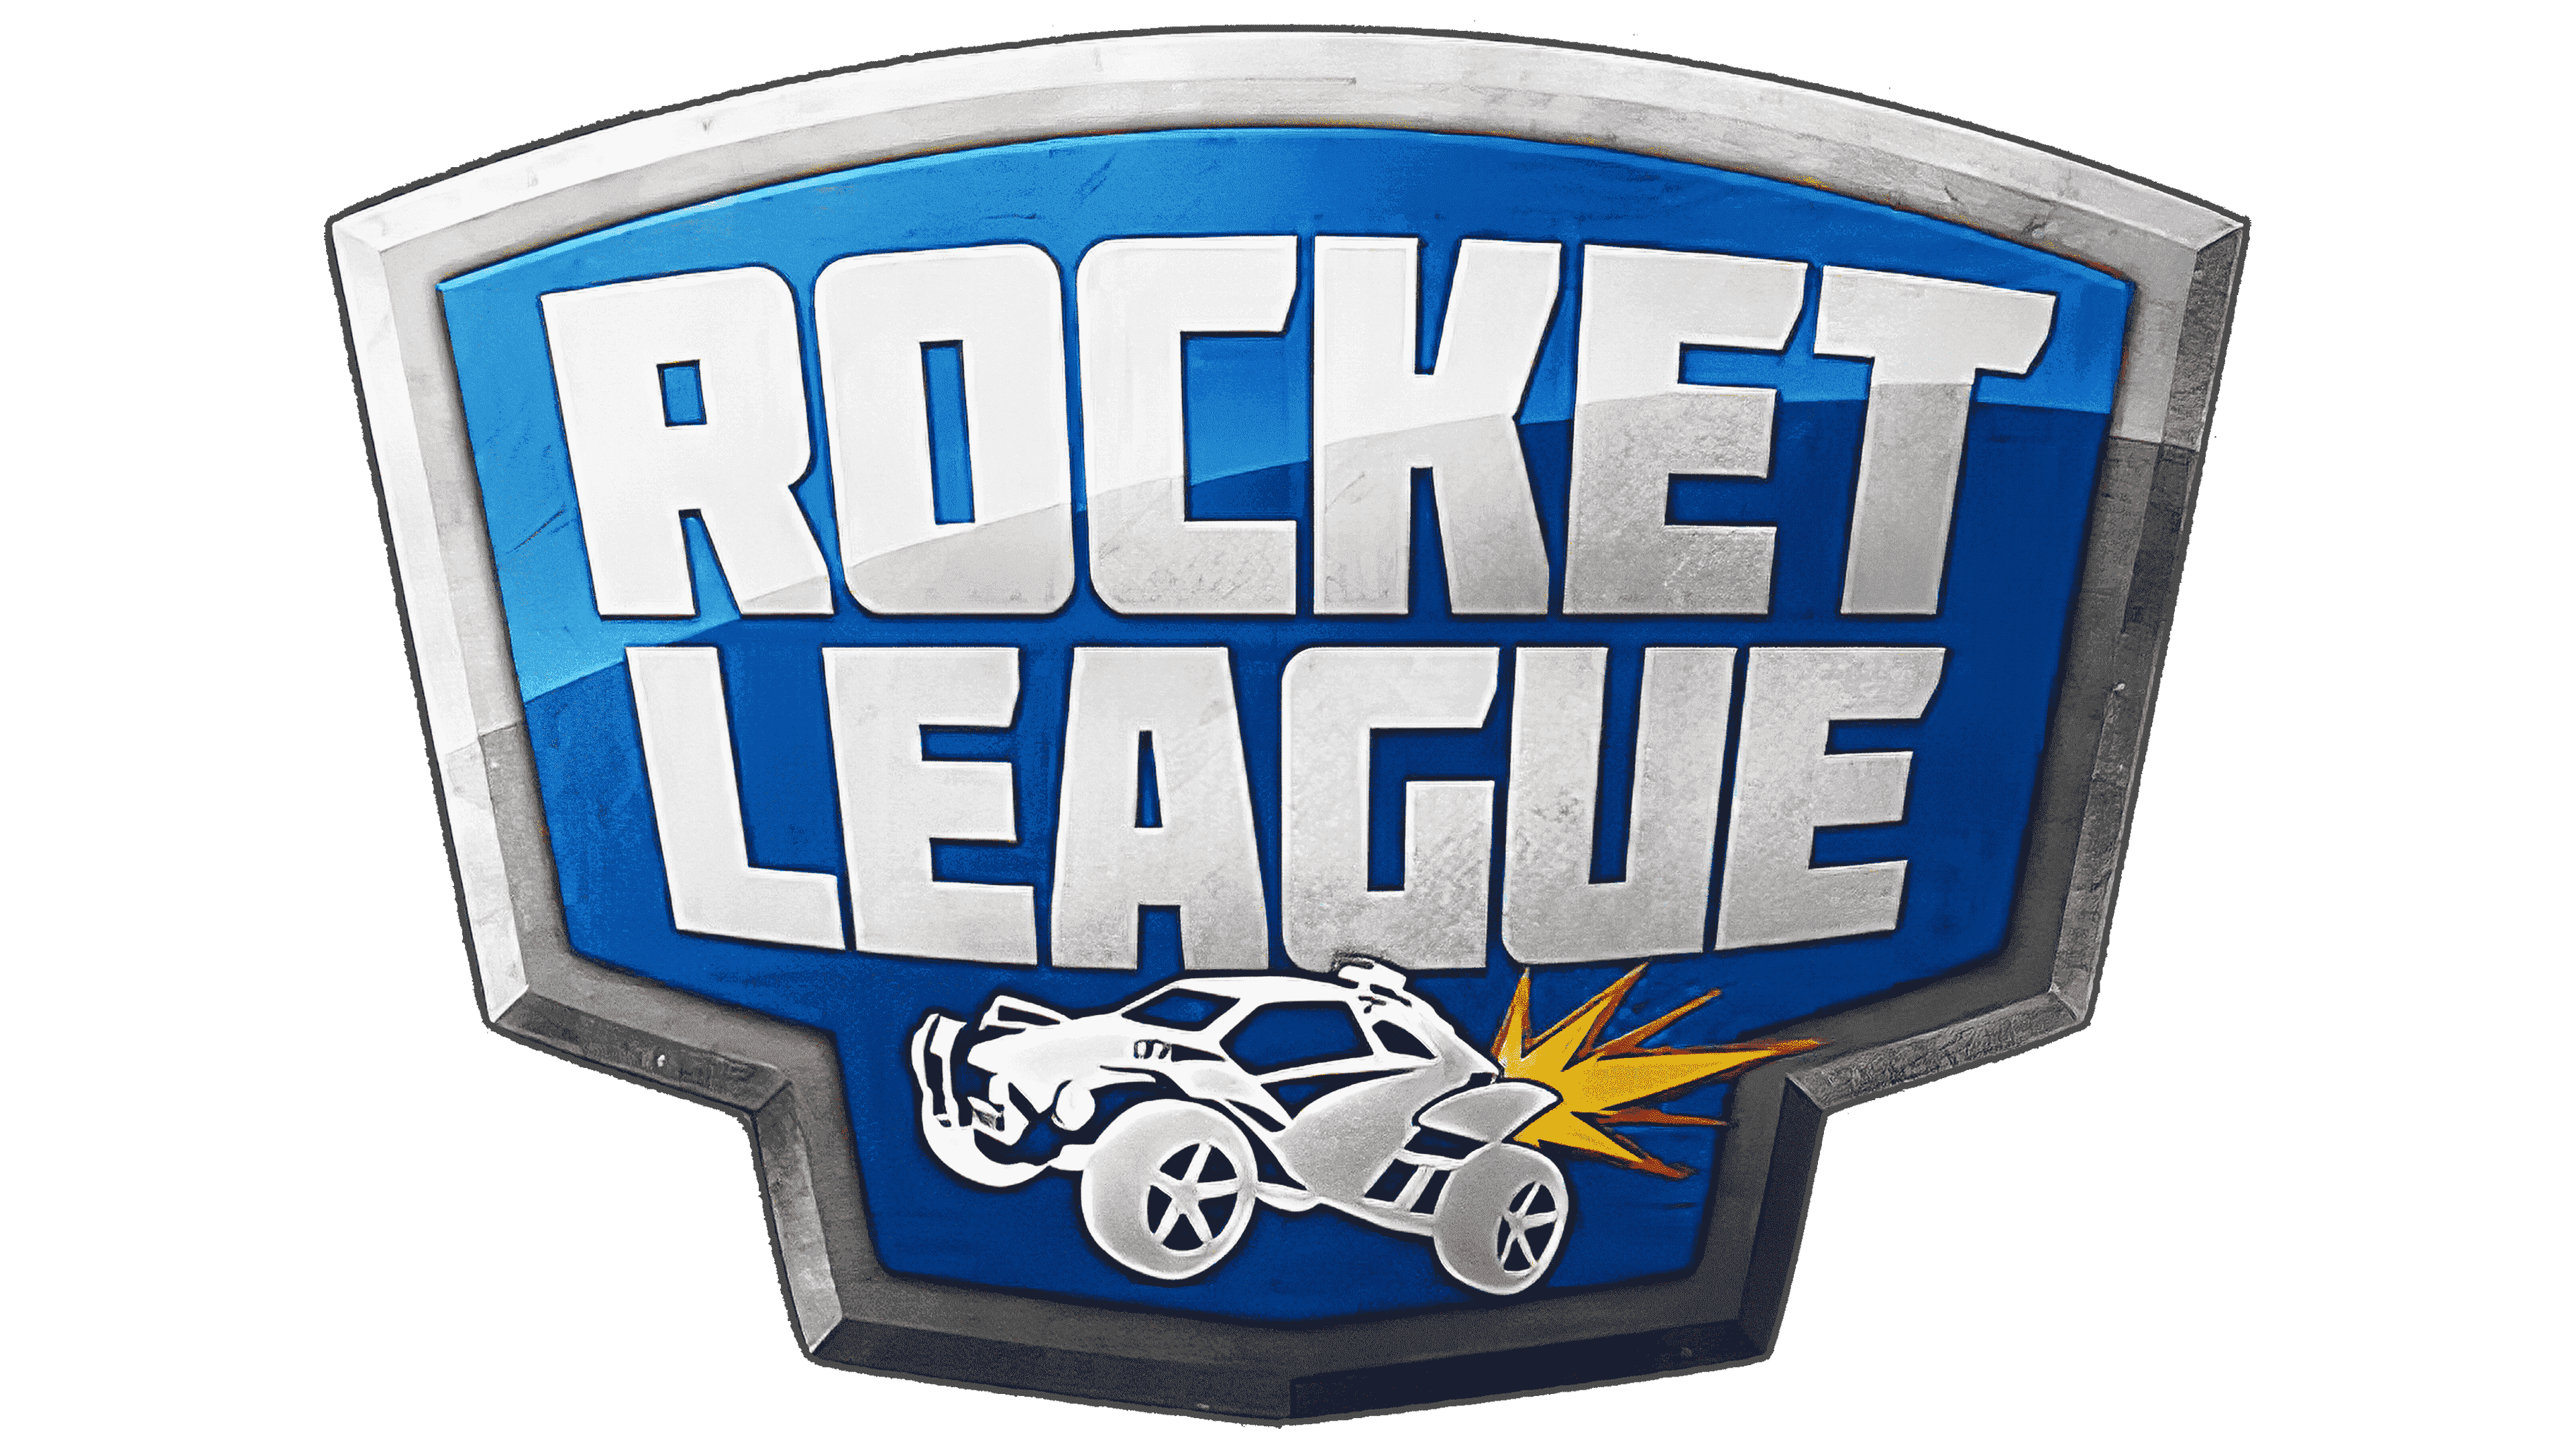 Rocket league rocket league octane transparent 2d